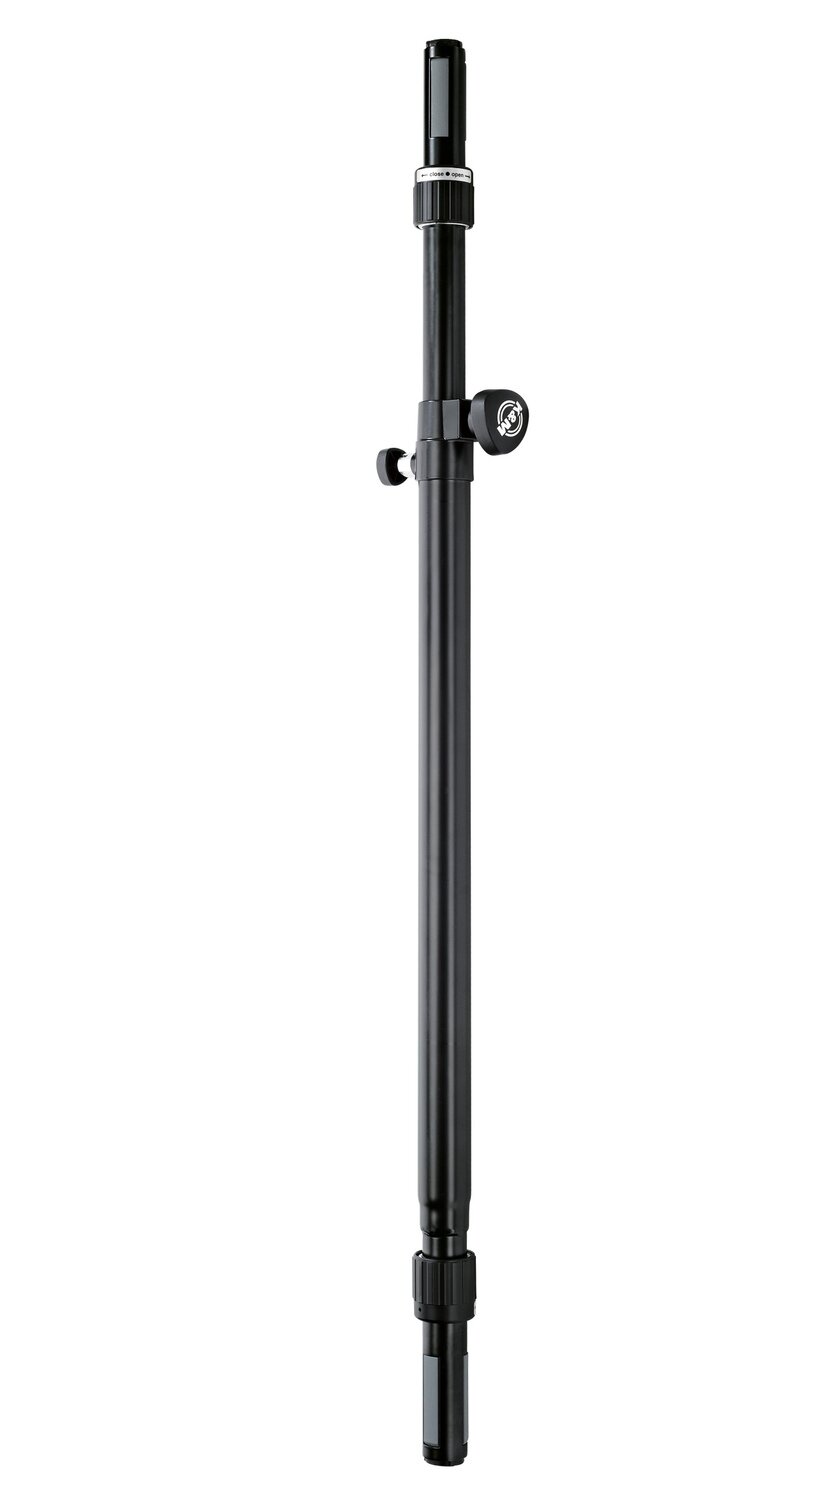 K&M 21366 Adjustable Subwoofer to Satellite Speaker Pole Rod (Black)
#KM21366 MFR #21366-014-55